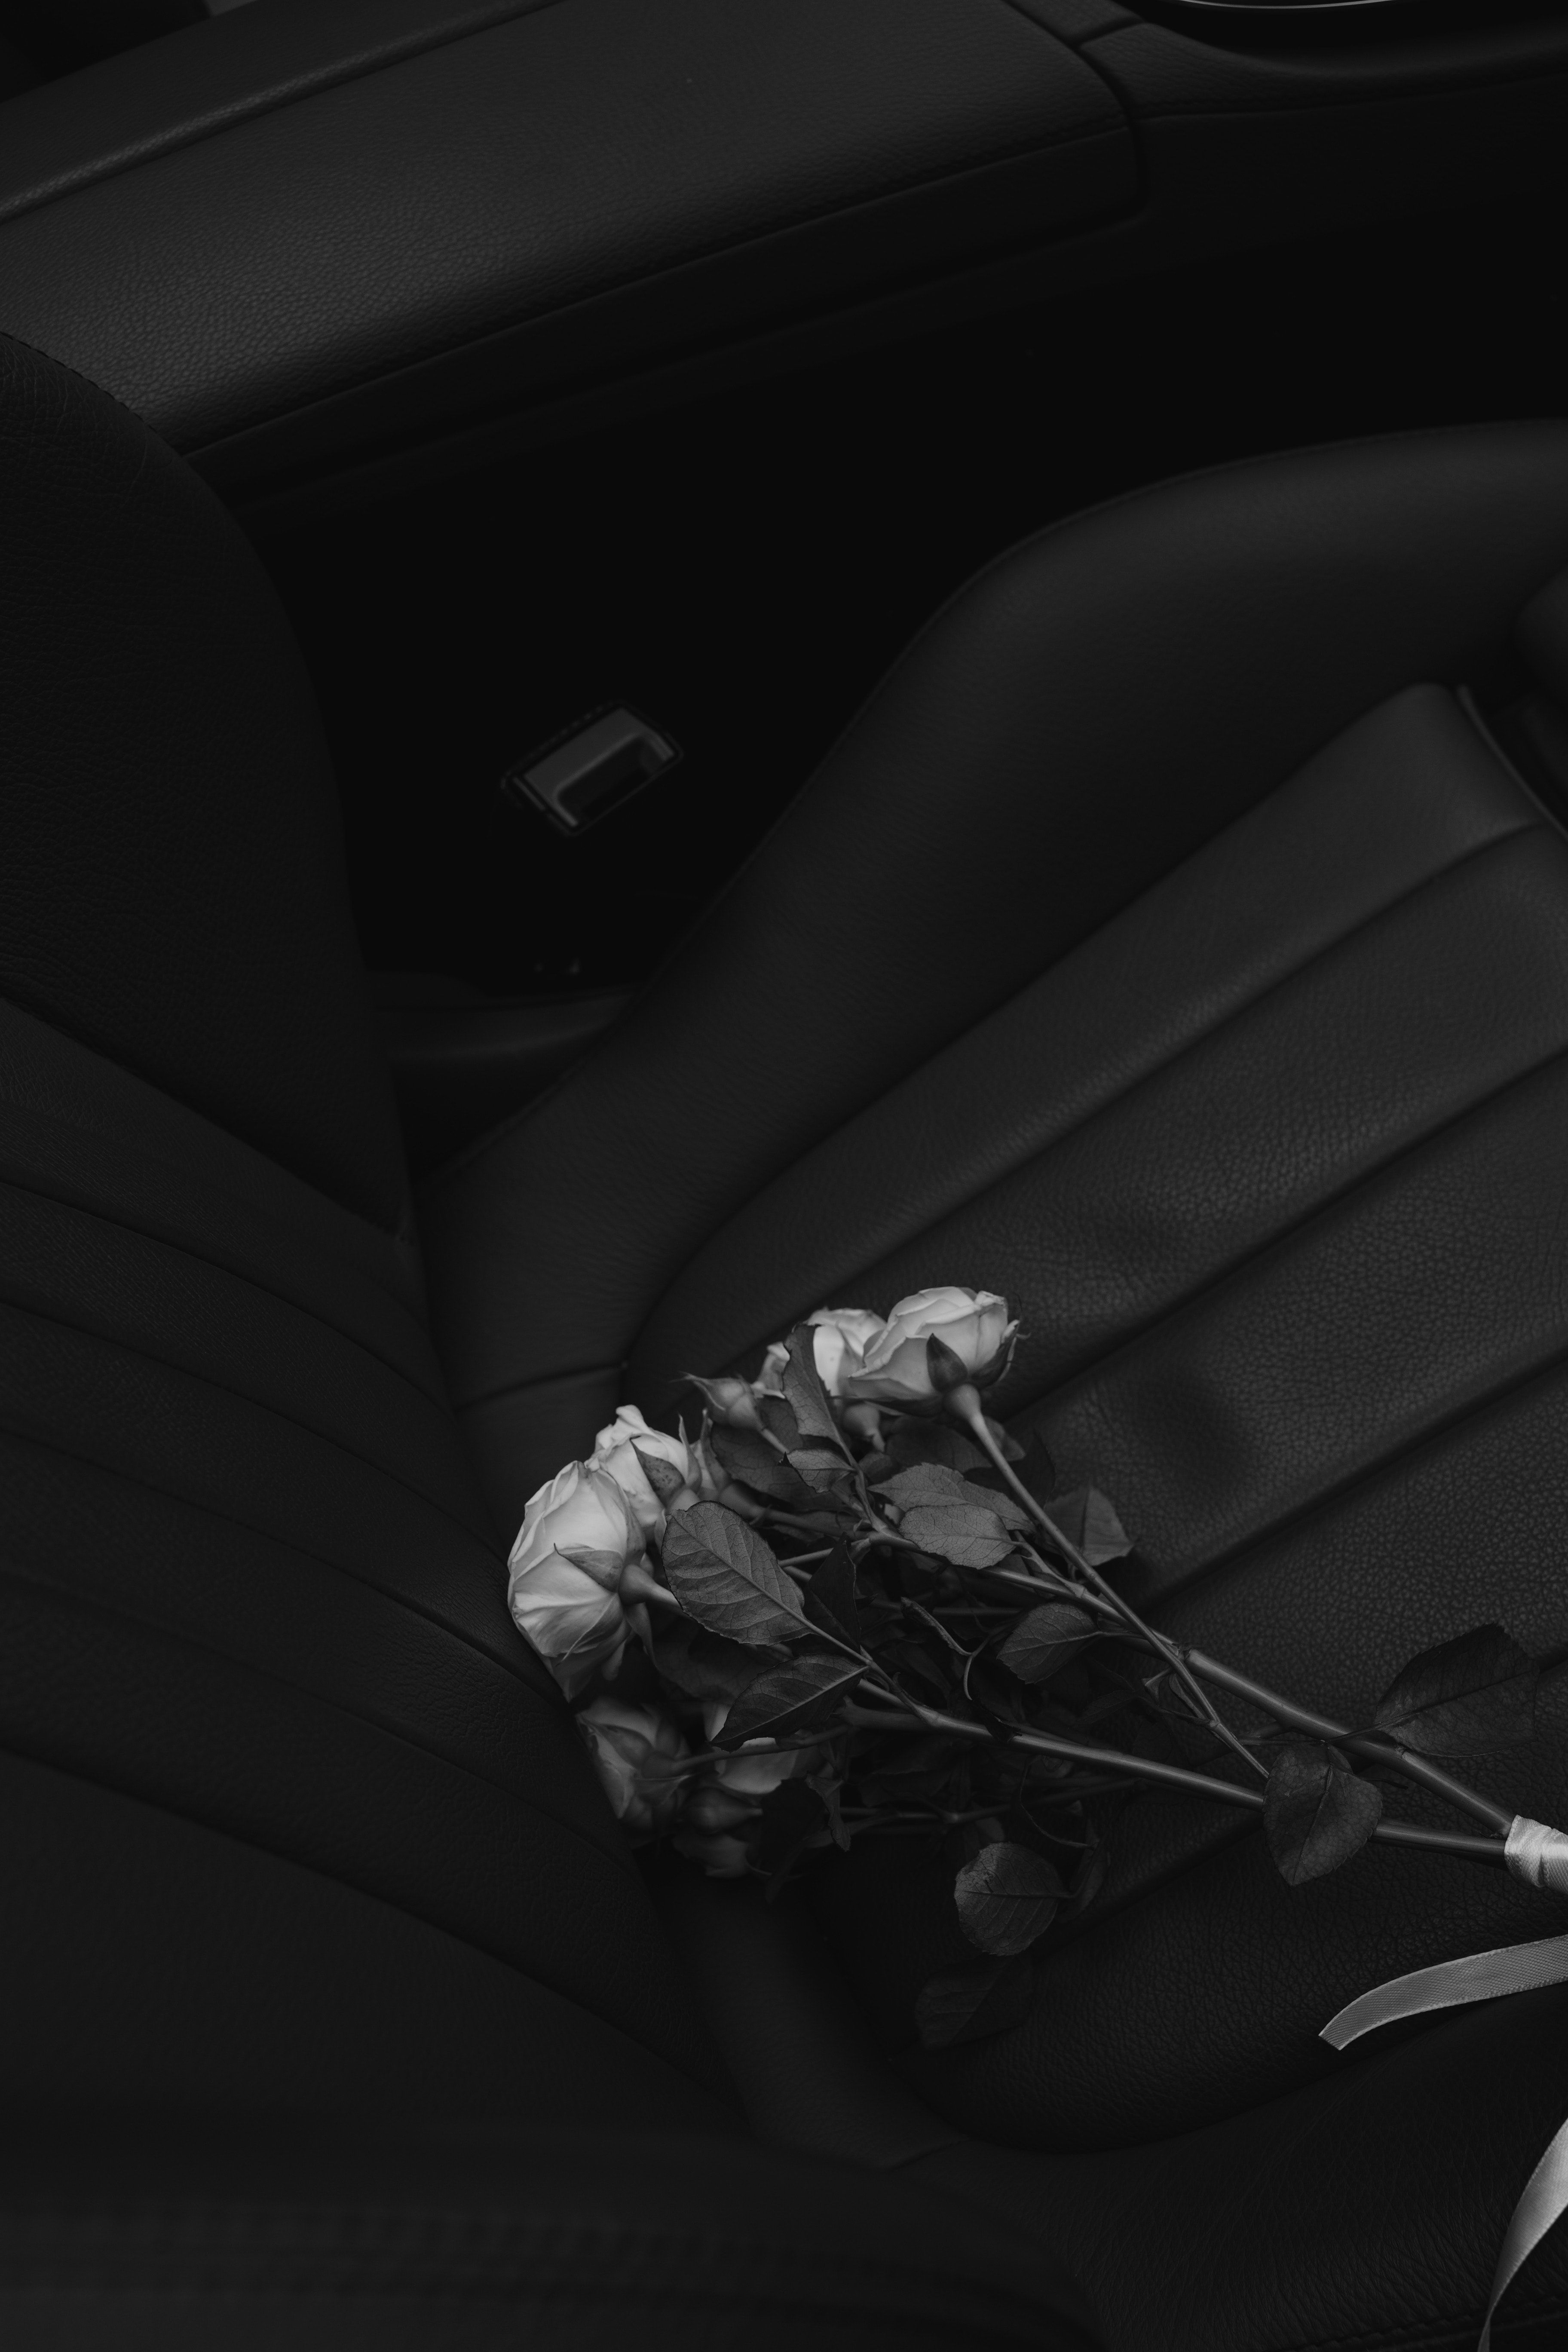  Schwarz Silber Hintergrundbild 3648x5472. Kostenloses Foto zum Thema: blume, einfarbig, festhalten, graustufen, hand, hintergrund, rose, schwarz und weiß, selektiven fokus, vertikaler schuss, wallpaper